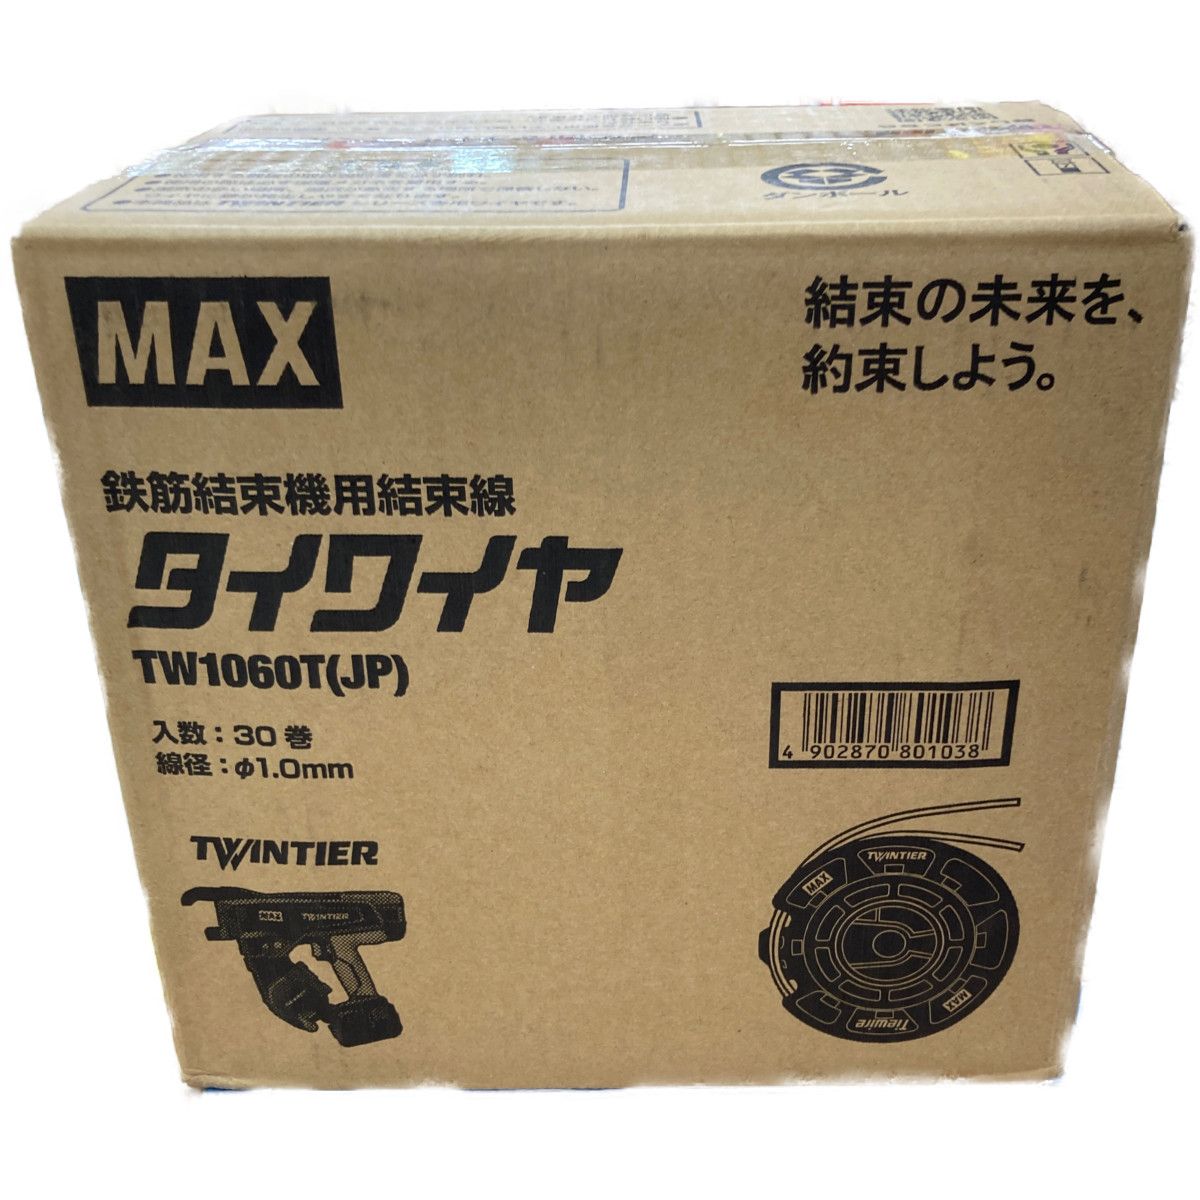 マックス(MAX) “ツインタイア”用タイワイヤ TW1060TJP - 2